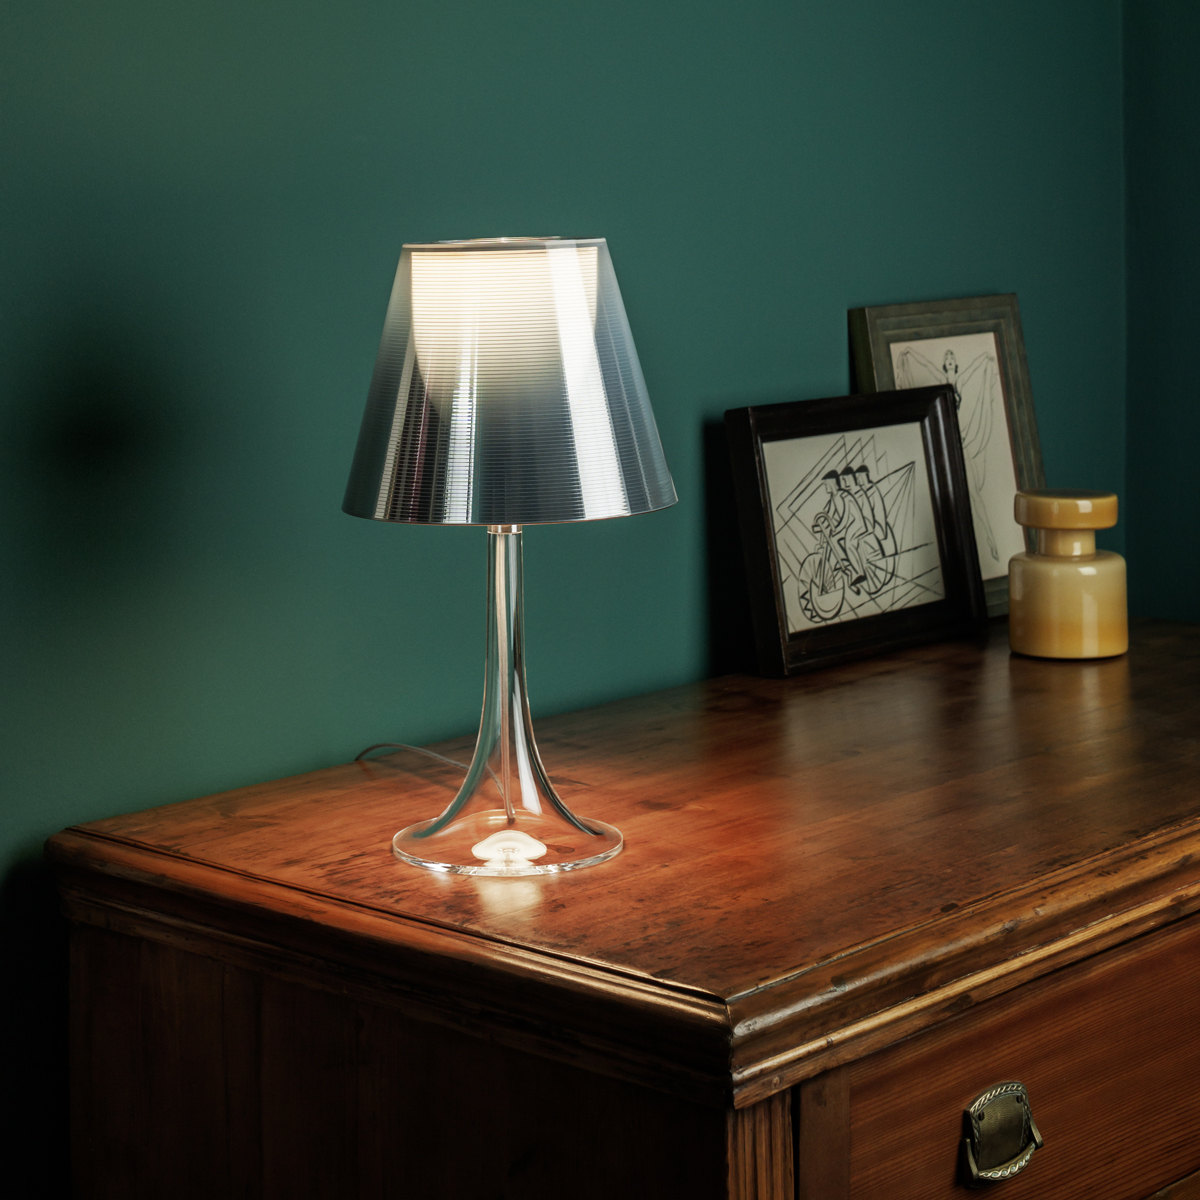 Miss K Table Lamp by Flos Lighting | FU625531 | FLO1033329